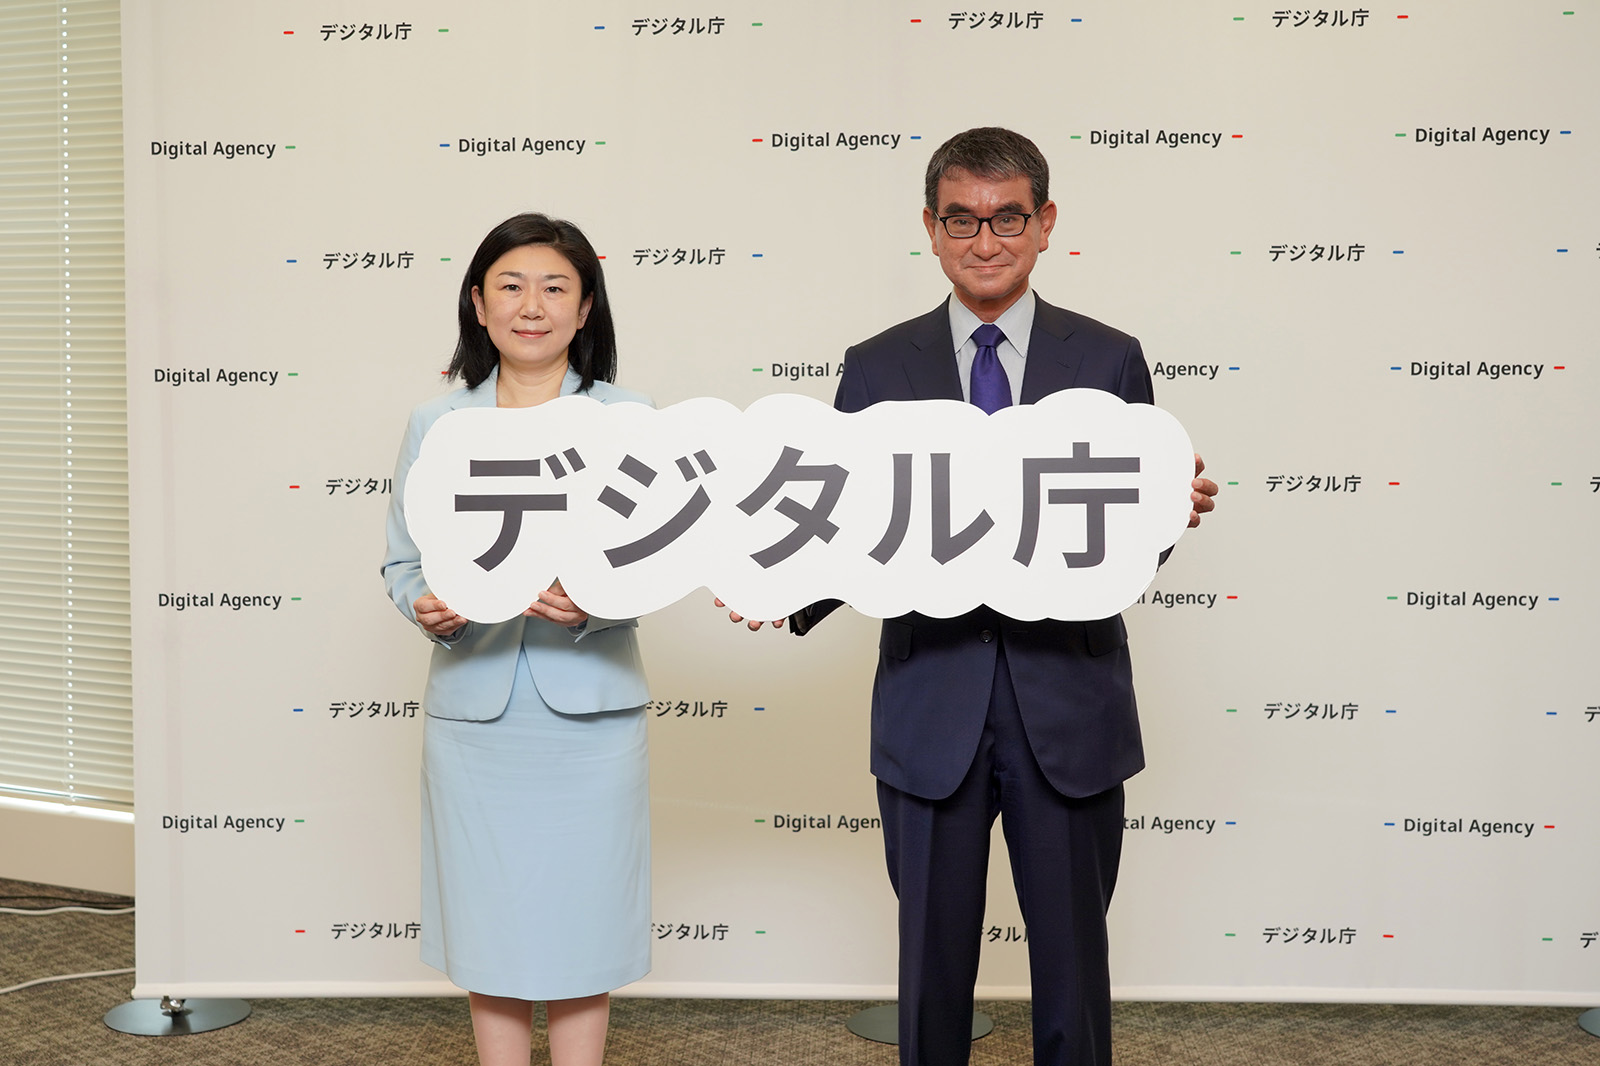 牧島かれん前デジタル大臣と河野太郎新デジタル大臣のツーショット。二人はデジタル庁のロゴを手に持っている。